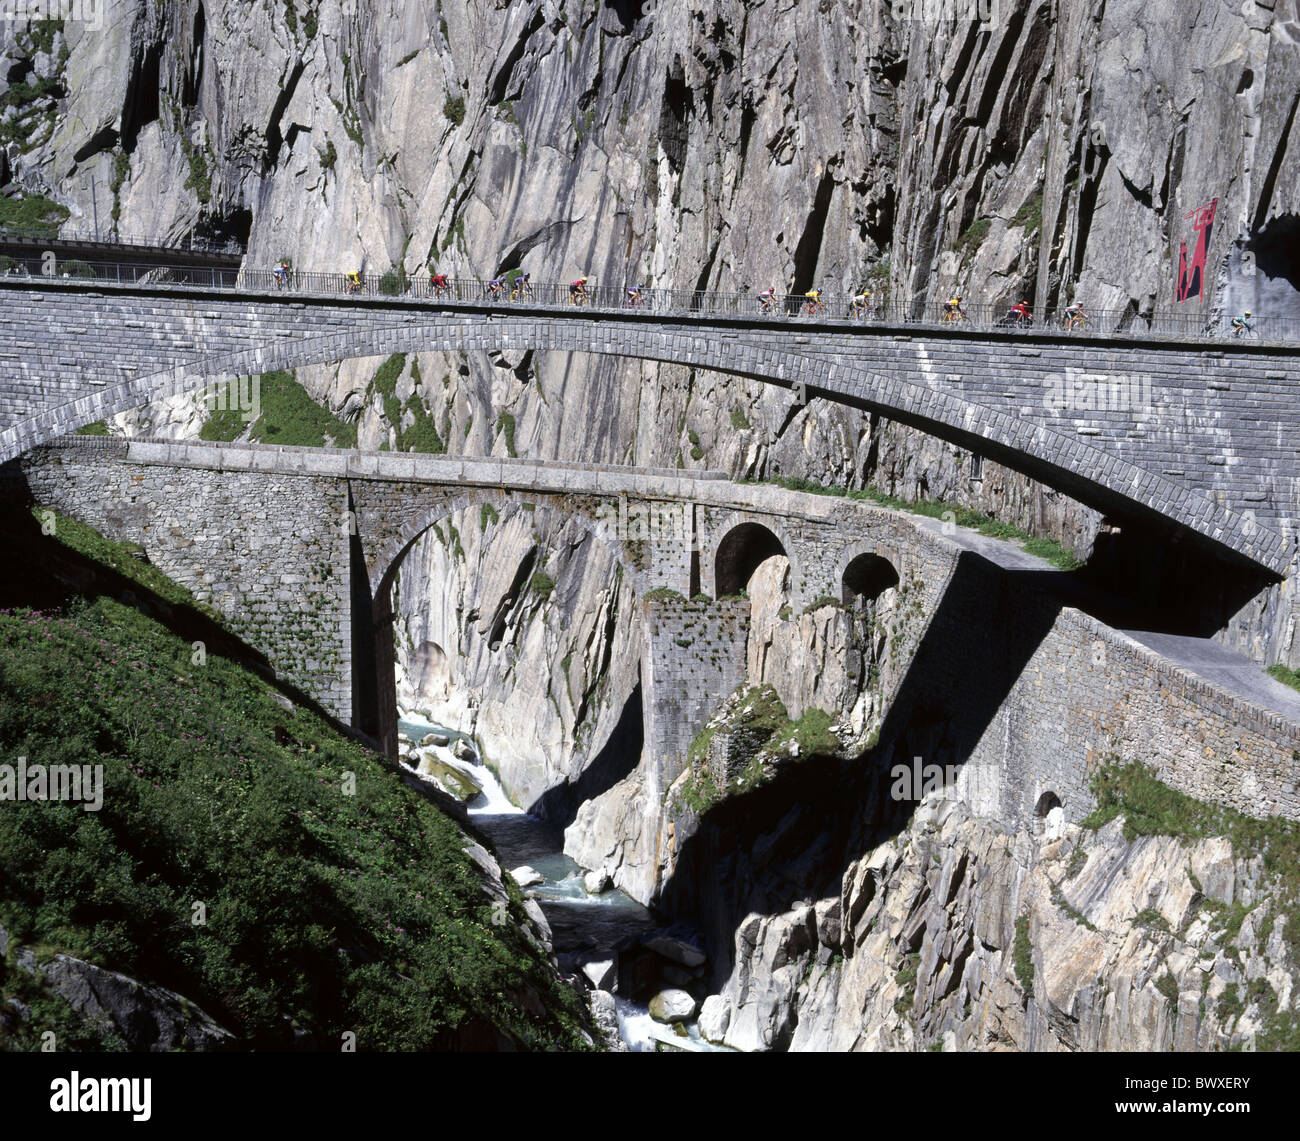 Le débit de la rivière mur falaise Gotthard Suisse Europe Suisse Europe Schollenen biker Uri viaducs meado Banque D'Images